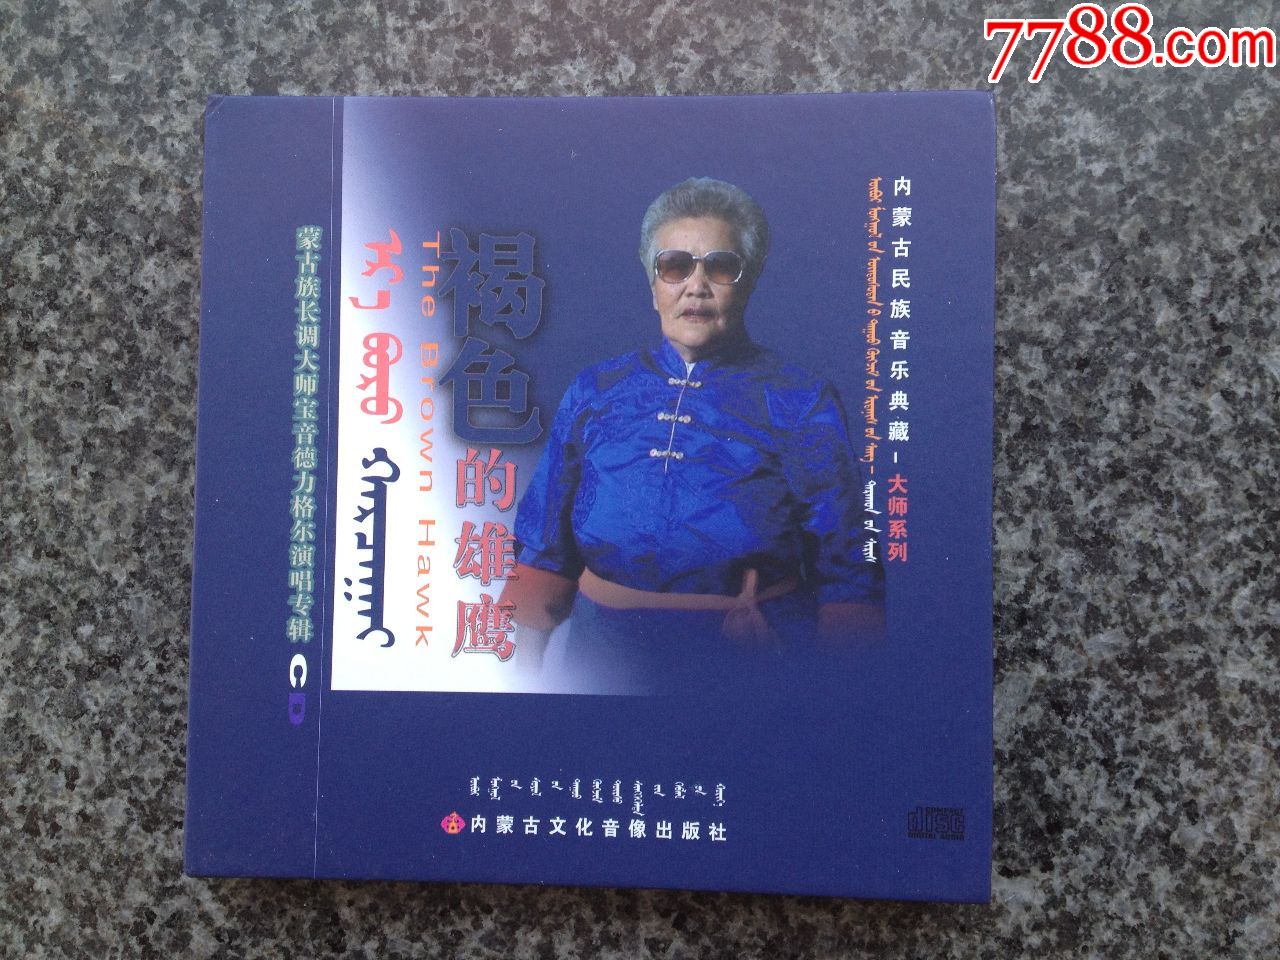 双碟装cd,蒙古族长调大师宝音德力格尔演唱专辑《褐色的雄鹰》